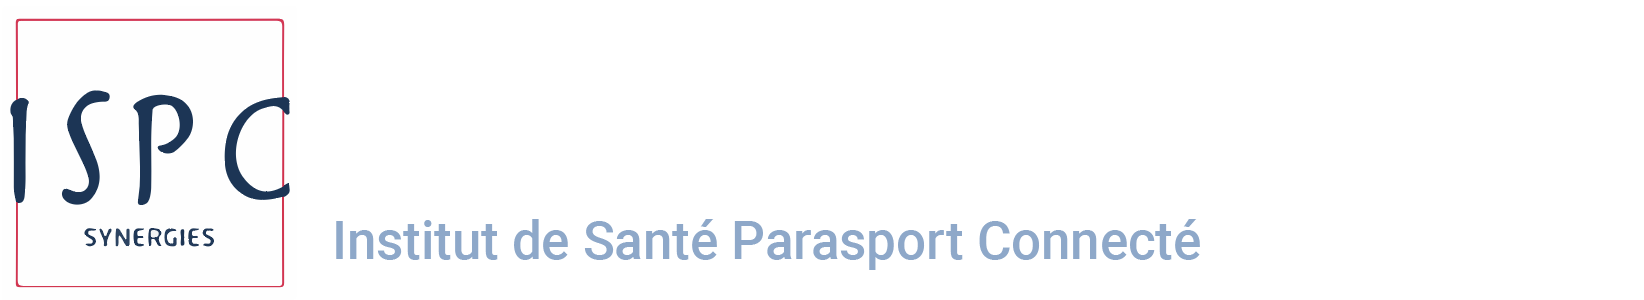 Logo ISPC Institut de Santé Parasport Connecté